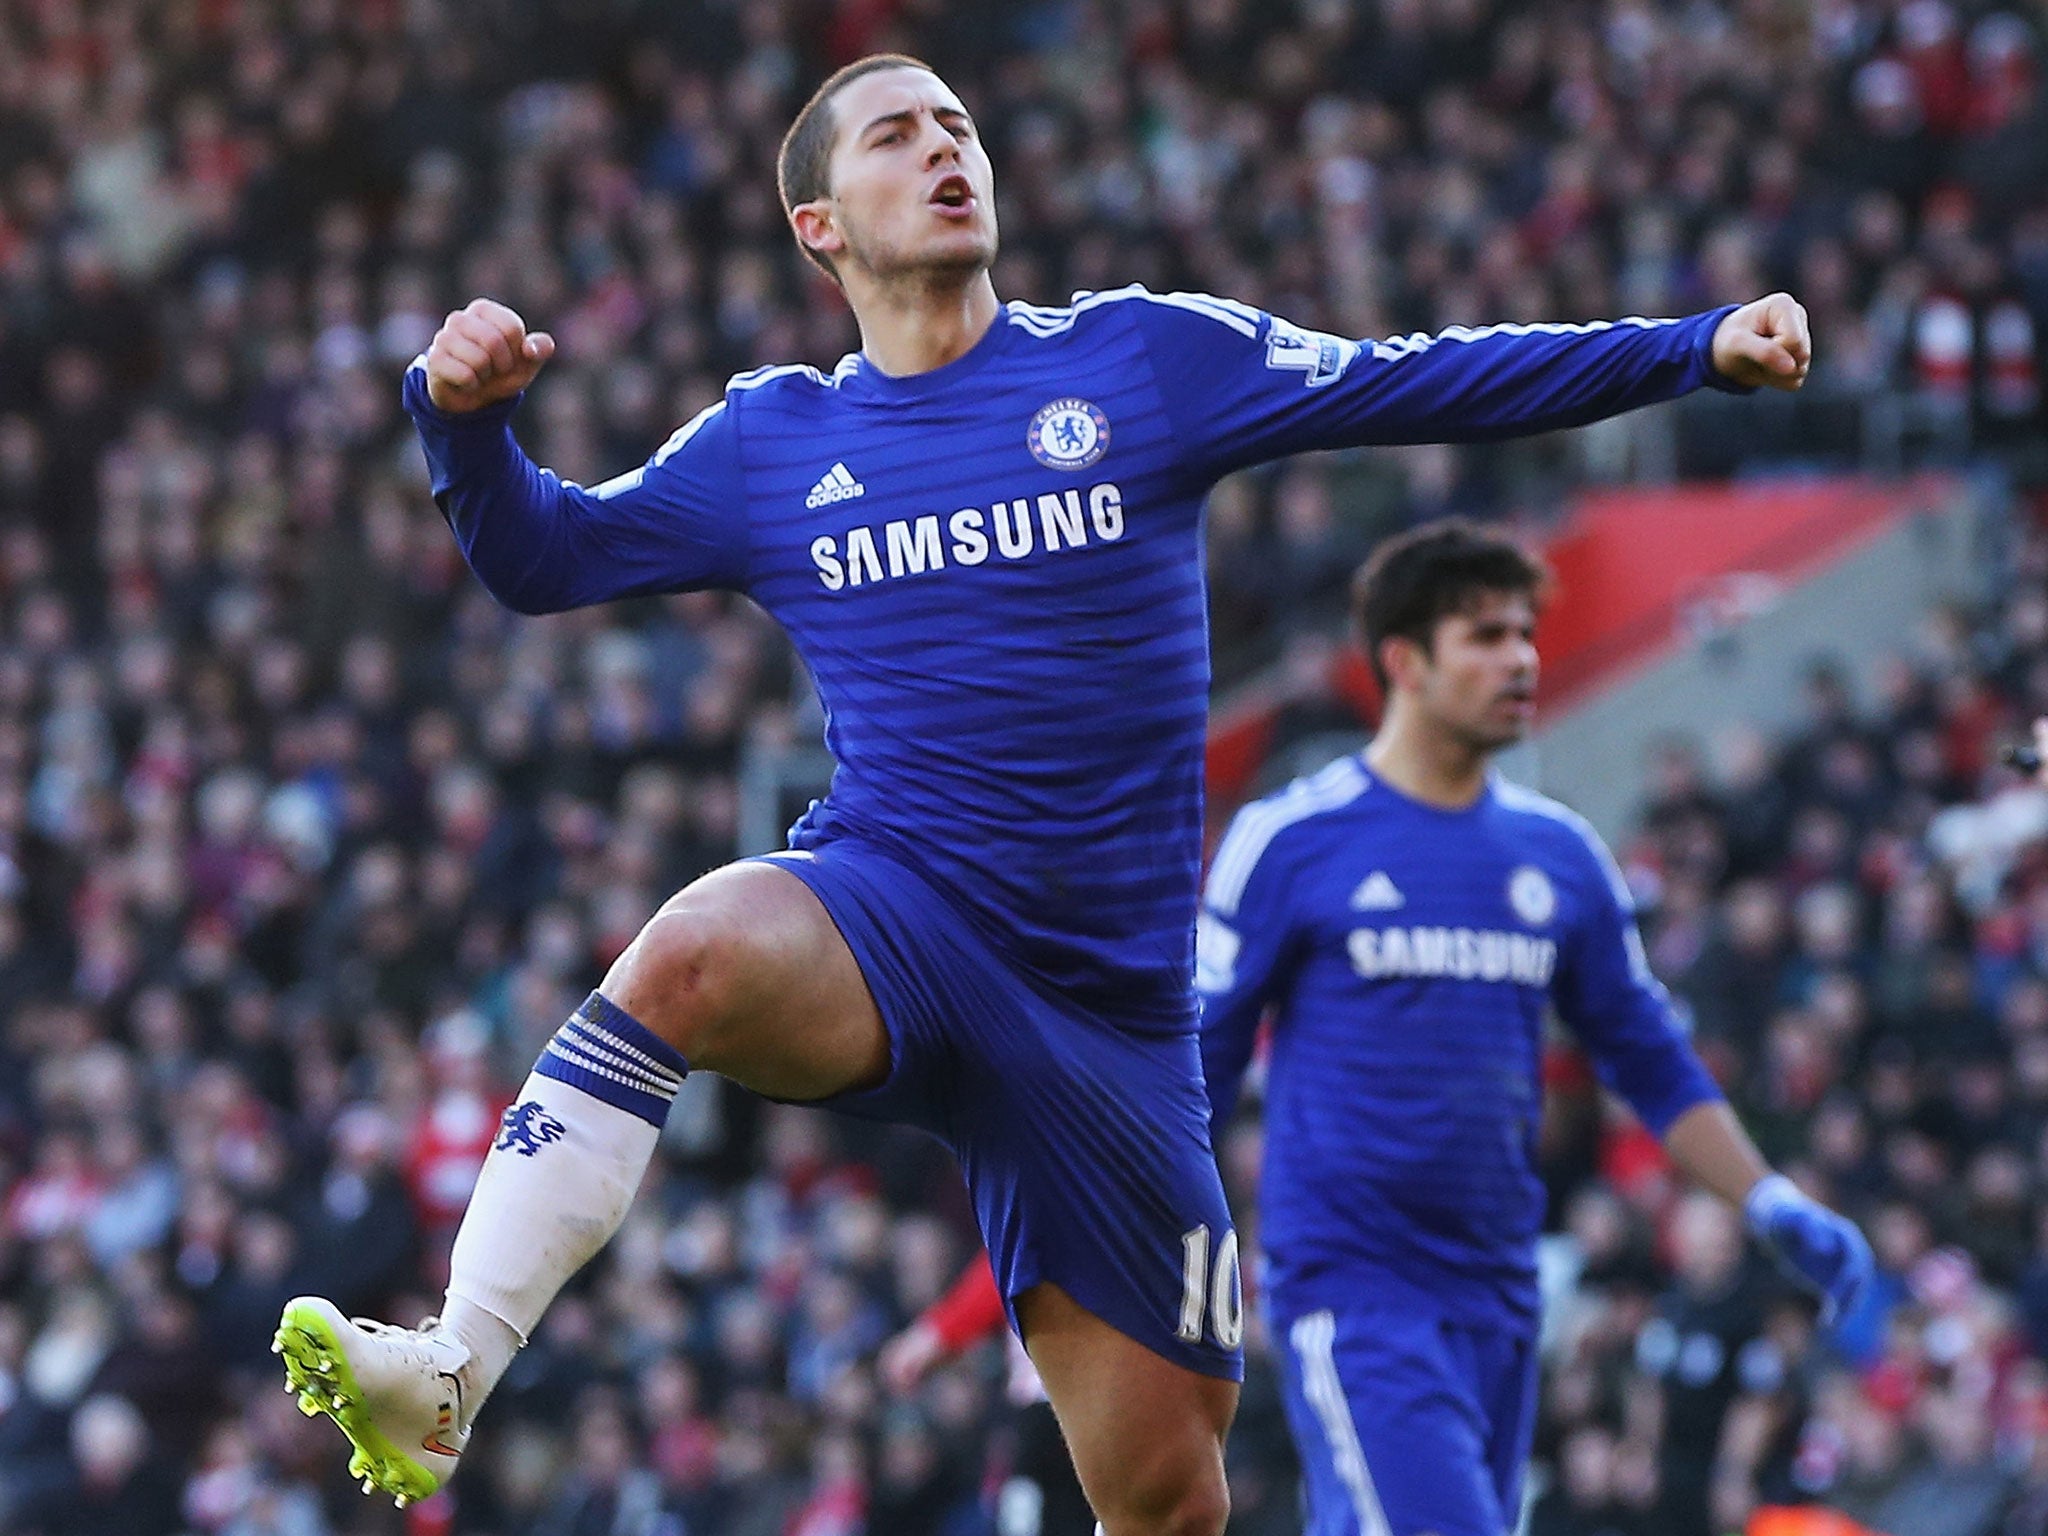 Chelsea winger Eden Hazard